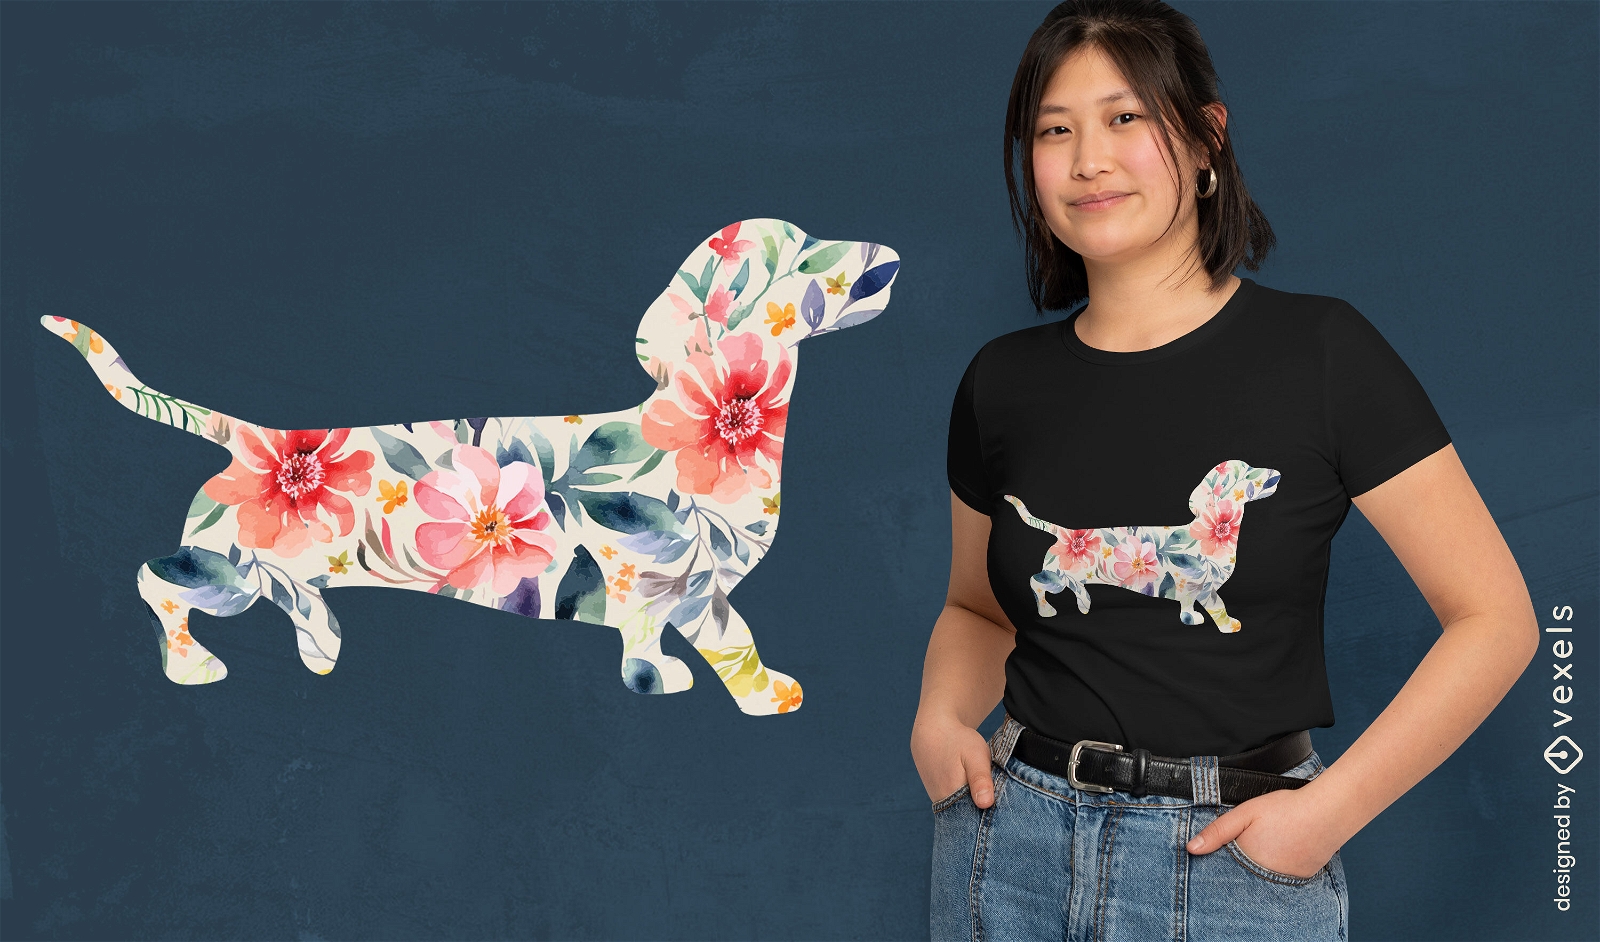 Diseño floral de camiseta de perro salchicha